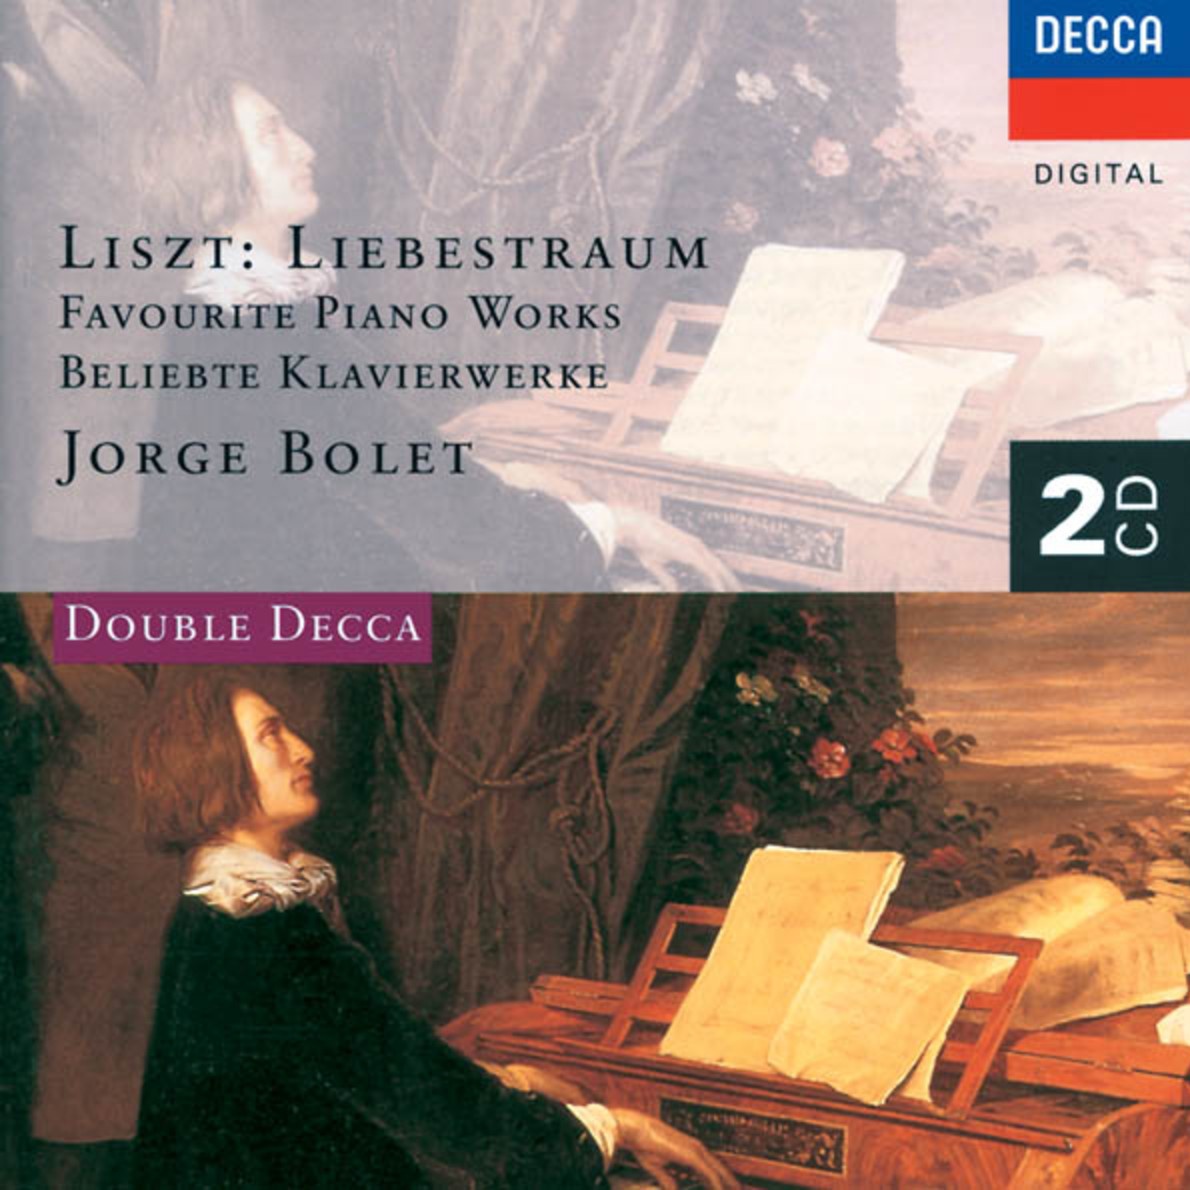 Liszt: Anne es de pe lerinage: 1e anne e: Suisse, S. 160  4. Au bord d' une source